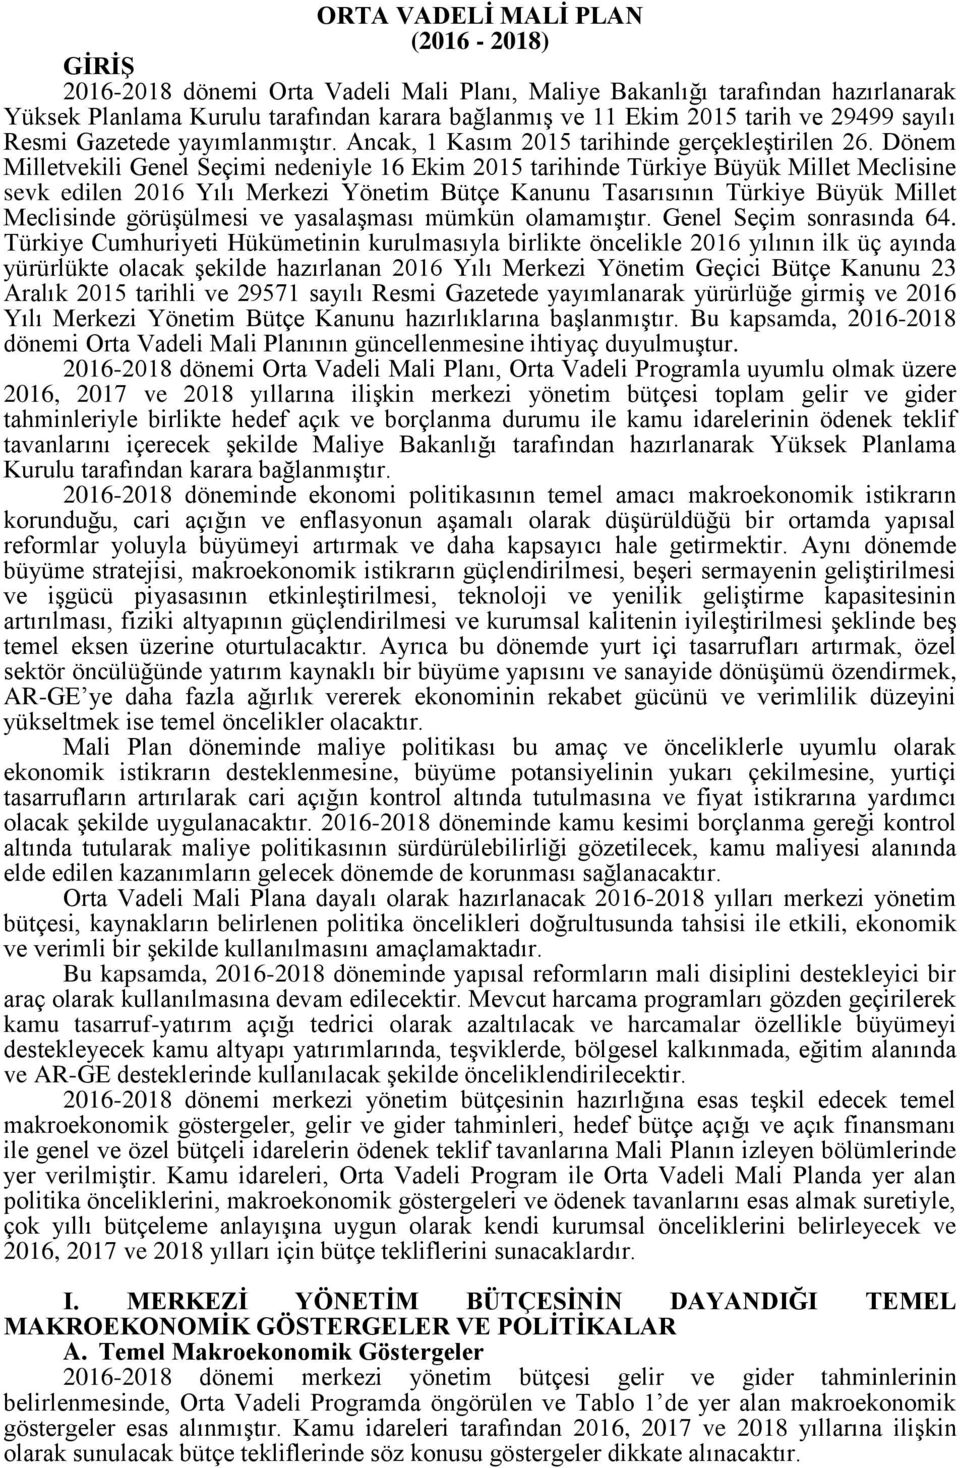 Dönem Milletvekili Genel Seçimi nedeniyle 16 Ekim 2015 tarihinde Türkiye Büyük Millet Meclisine sevk edilen 2016 Yılı Merkezi Yönetim Bütçe Kanunu Tasarısının Türkiye Büyük Millet Meclisinde